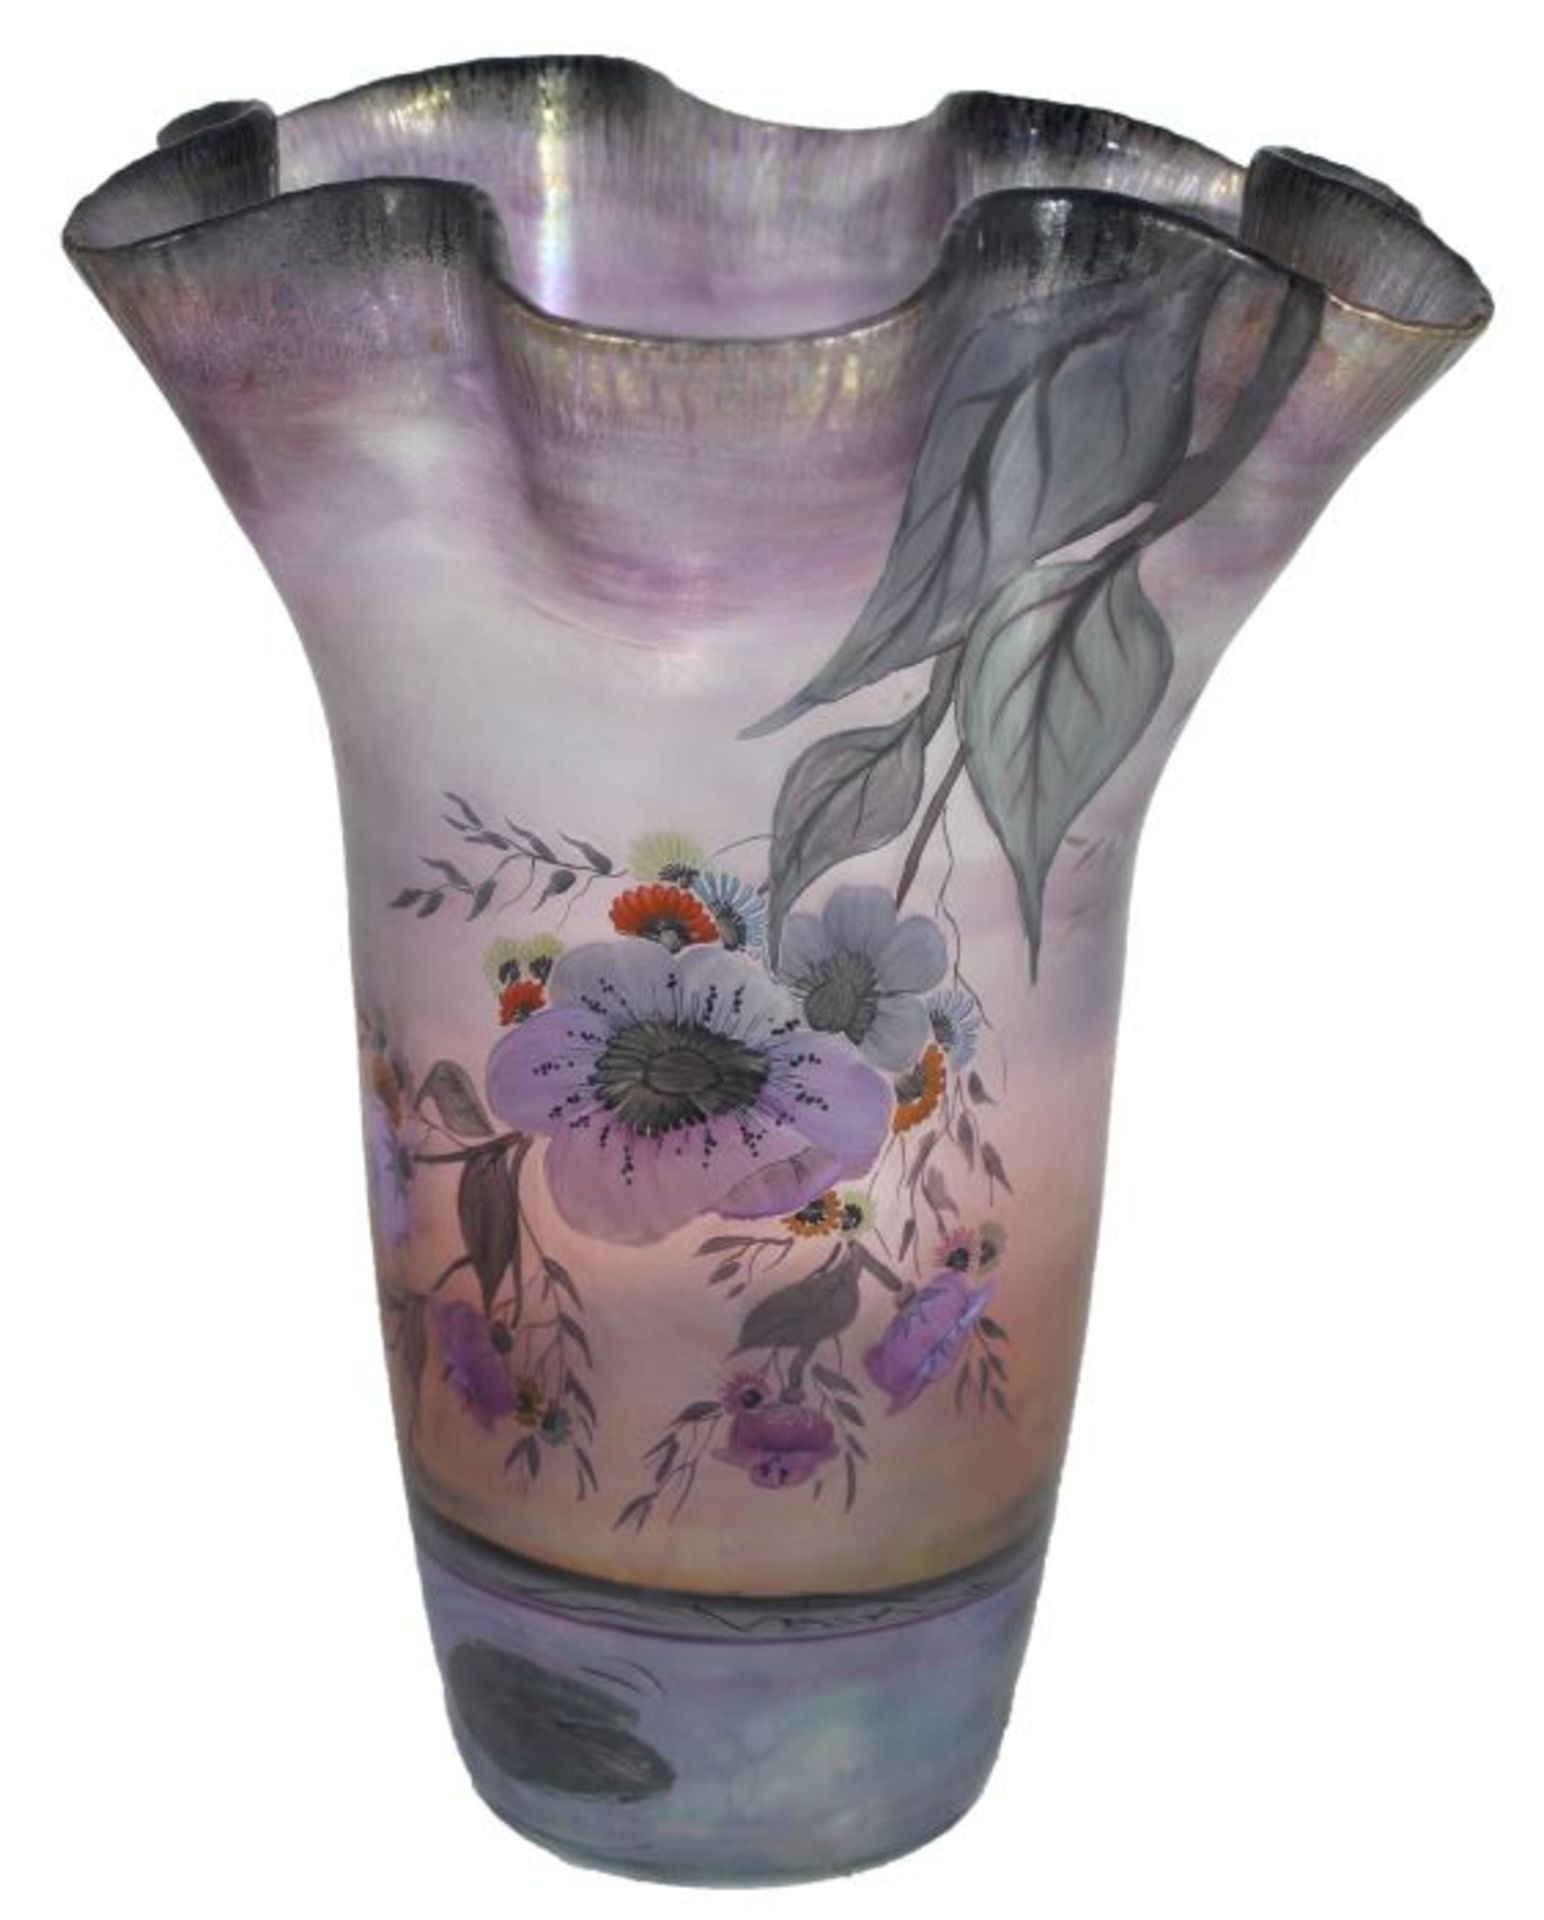 Vase - Glashütte Eisch (Frauenau) signiert und datiert (19)88, monogrammiert MS, farbloses Glas